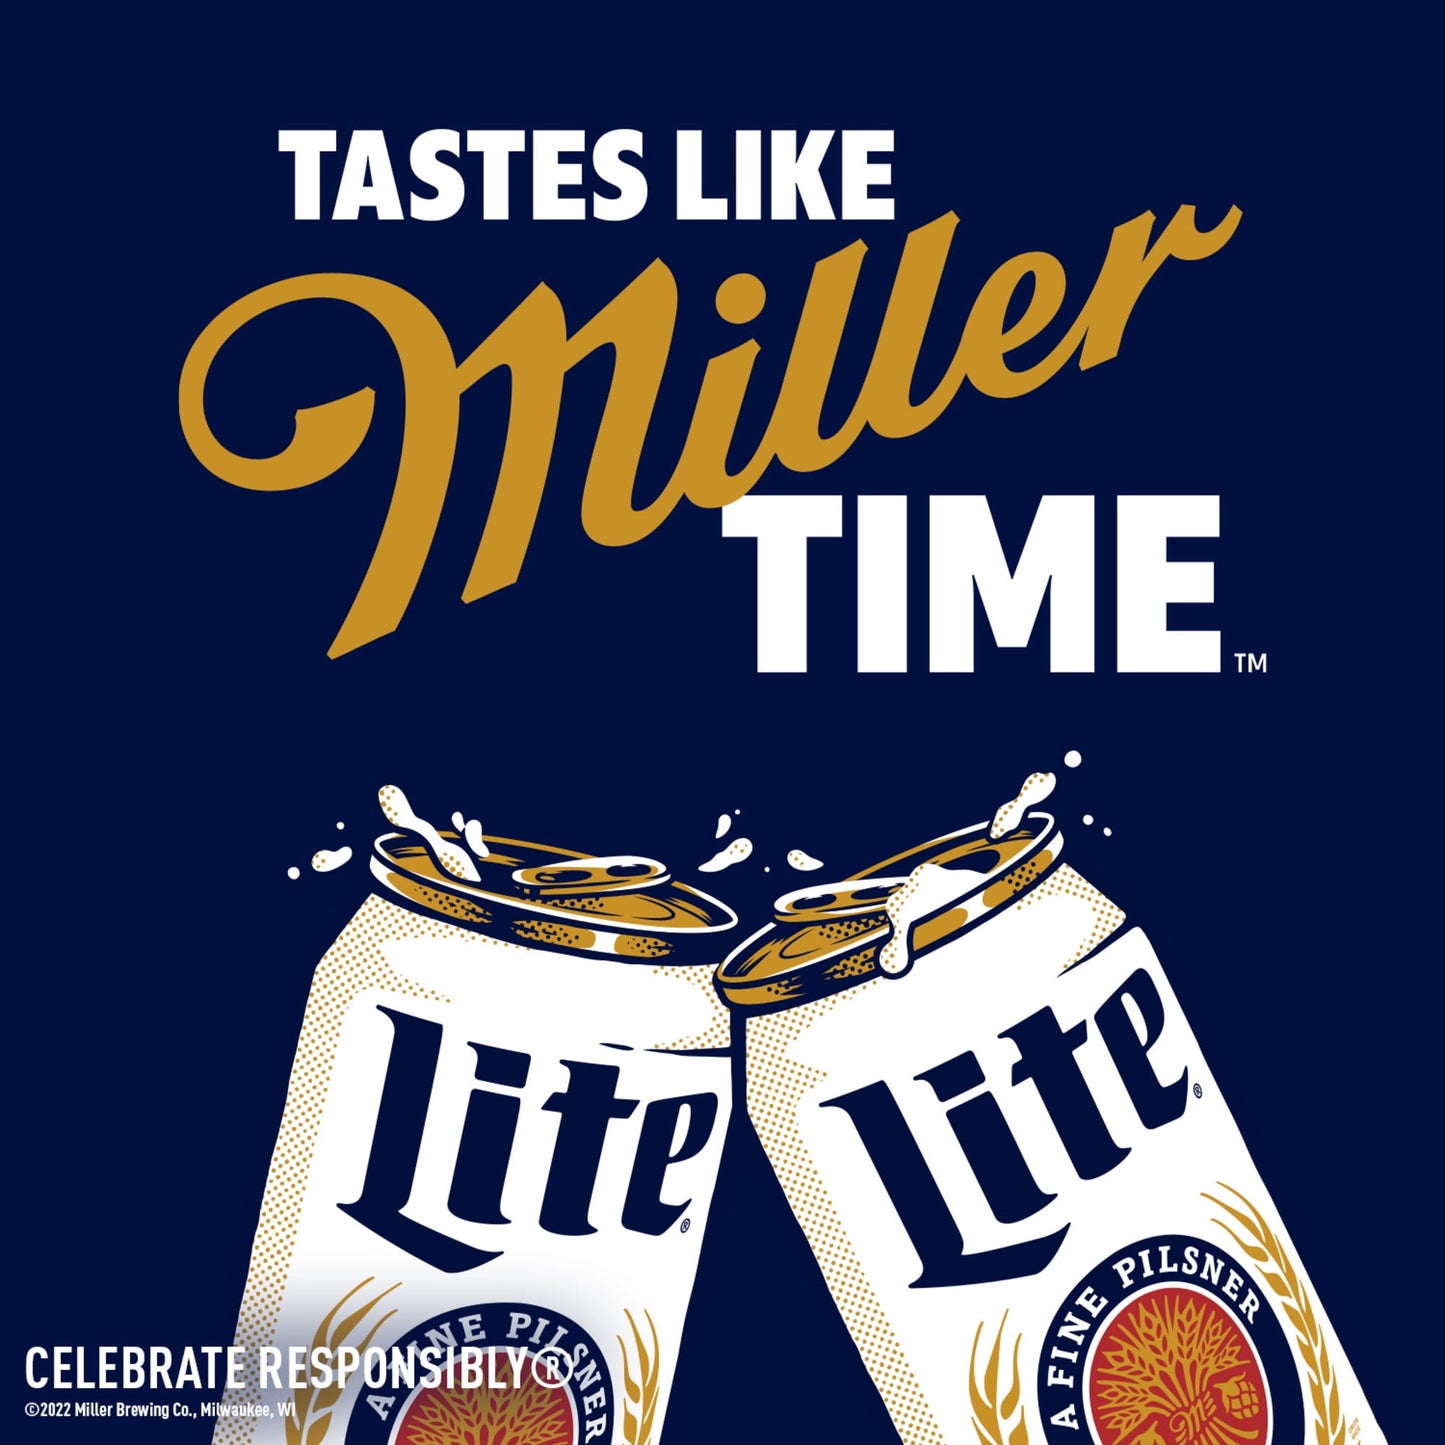 Miller Lite Lager Beer, 6 Pack, 16 fl oz Cans, 4.2% ABV